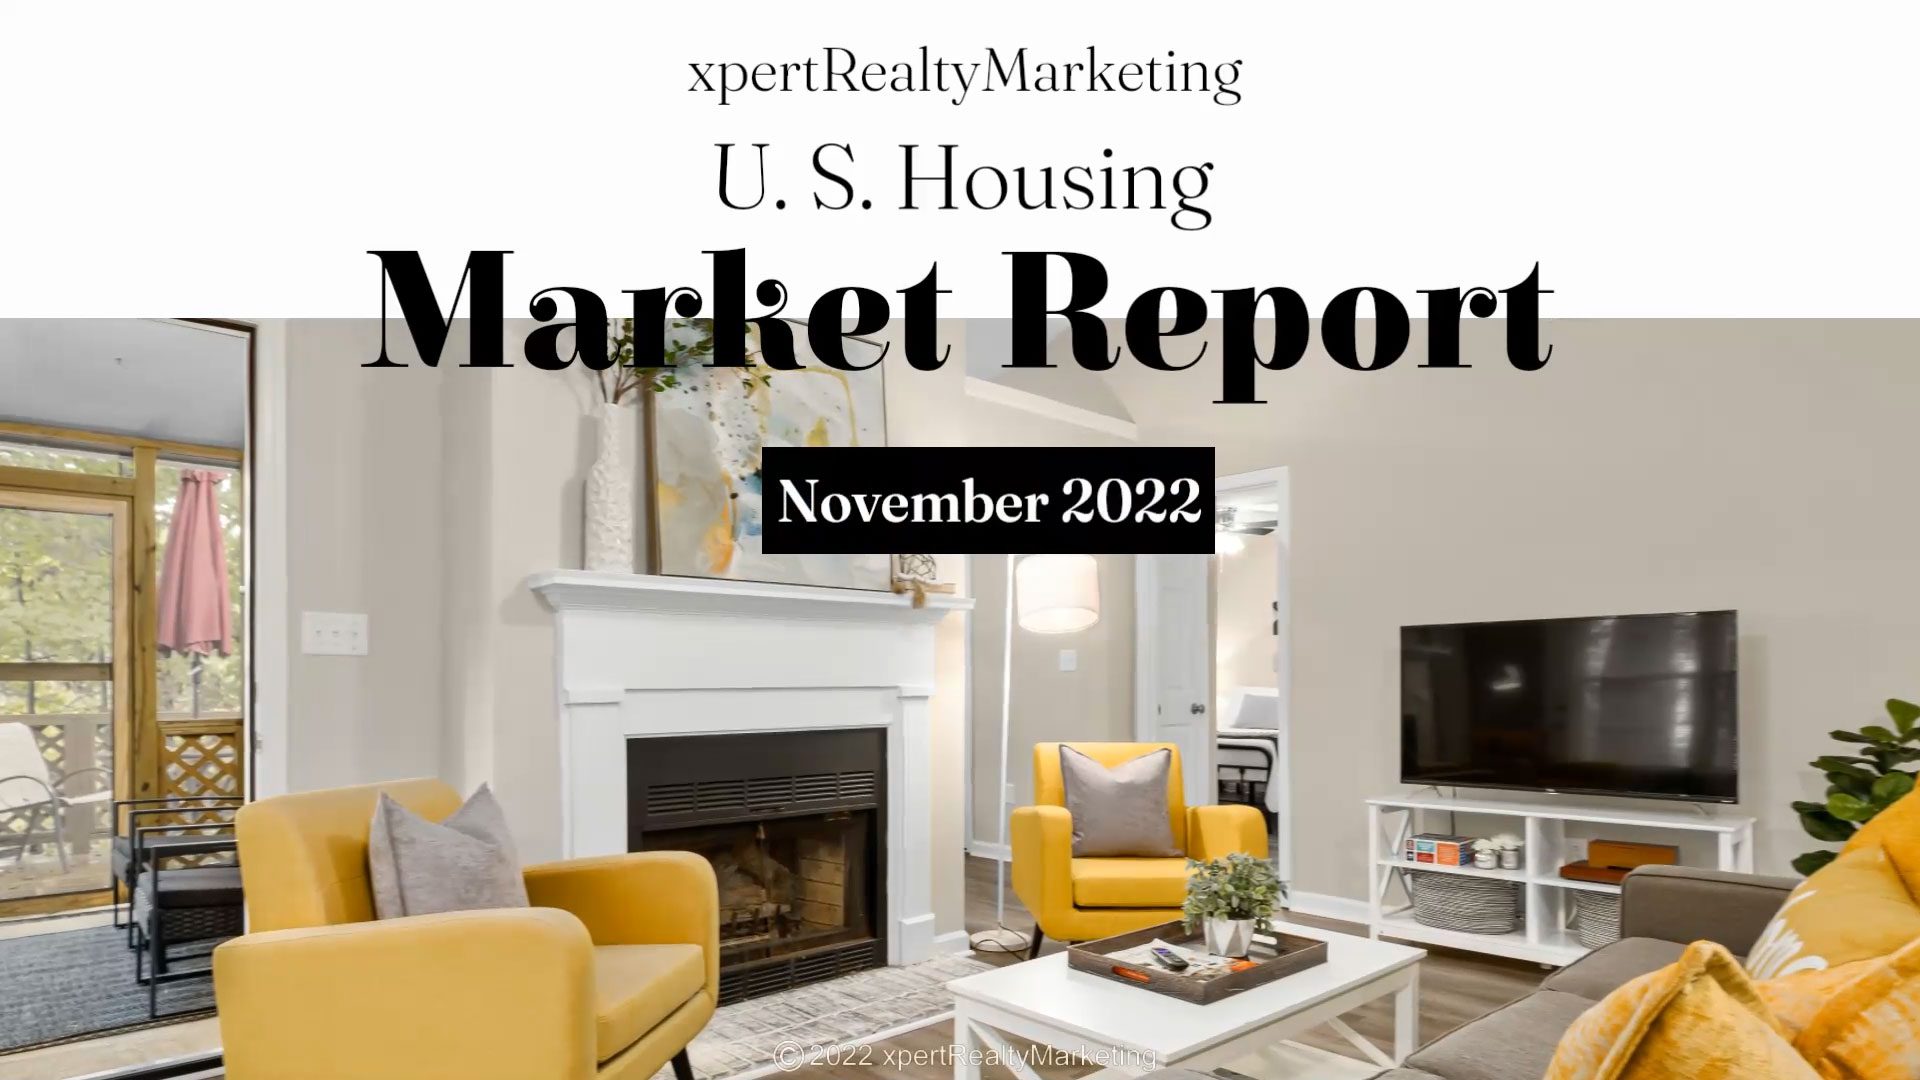 U.S. Housing Market Report for November 2022